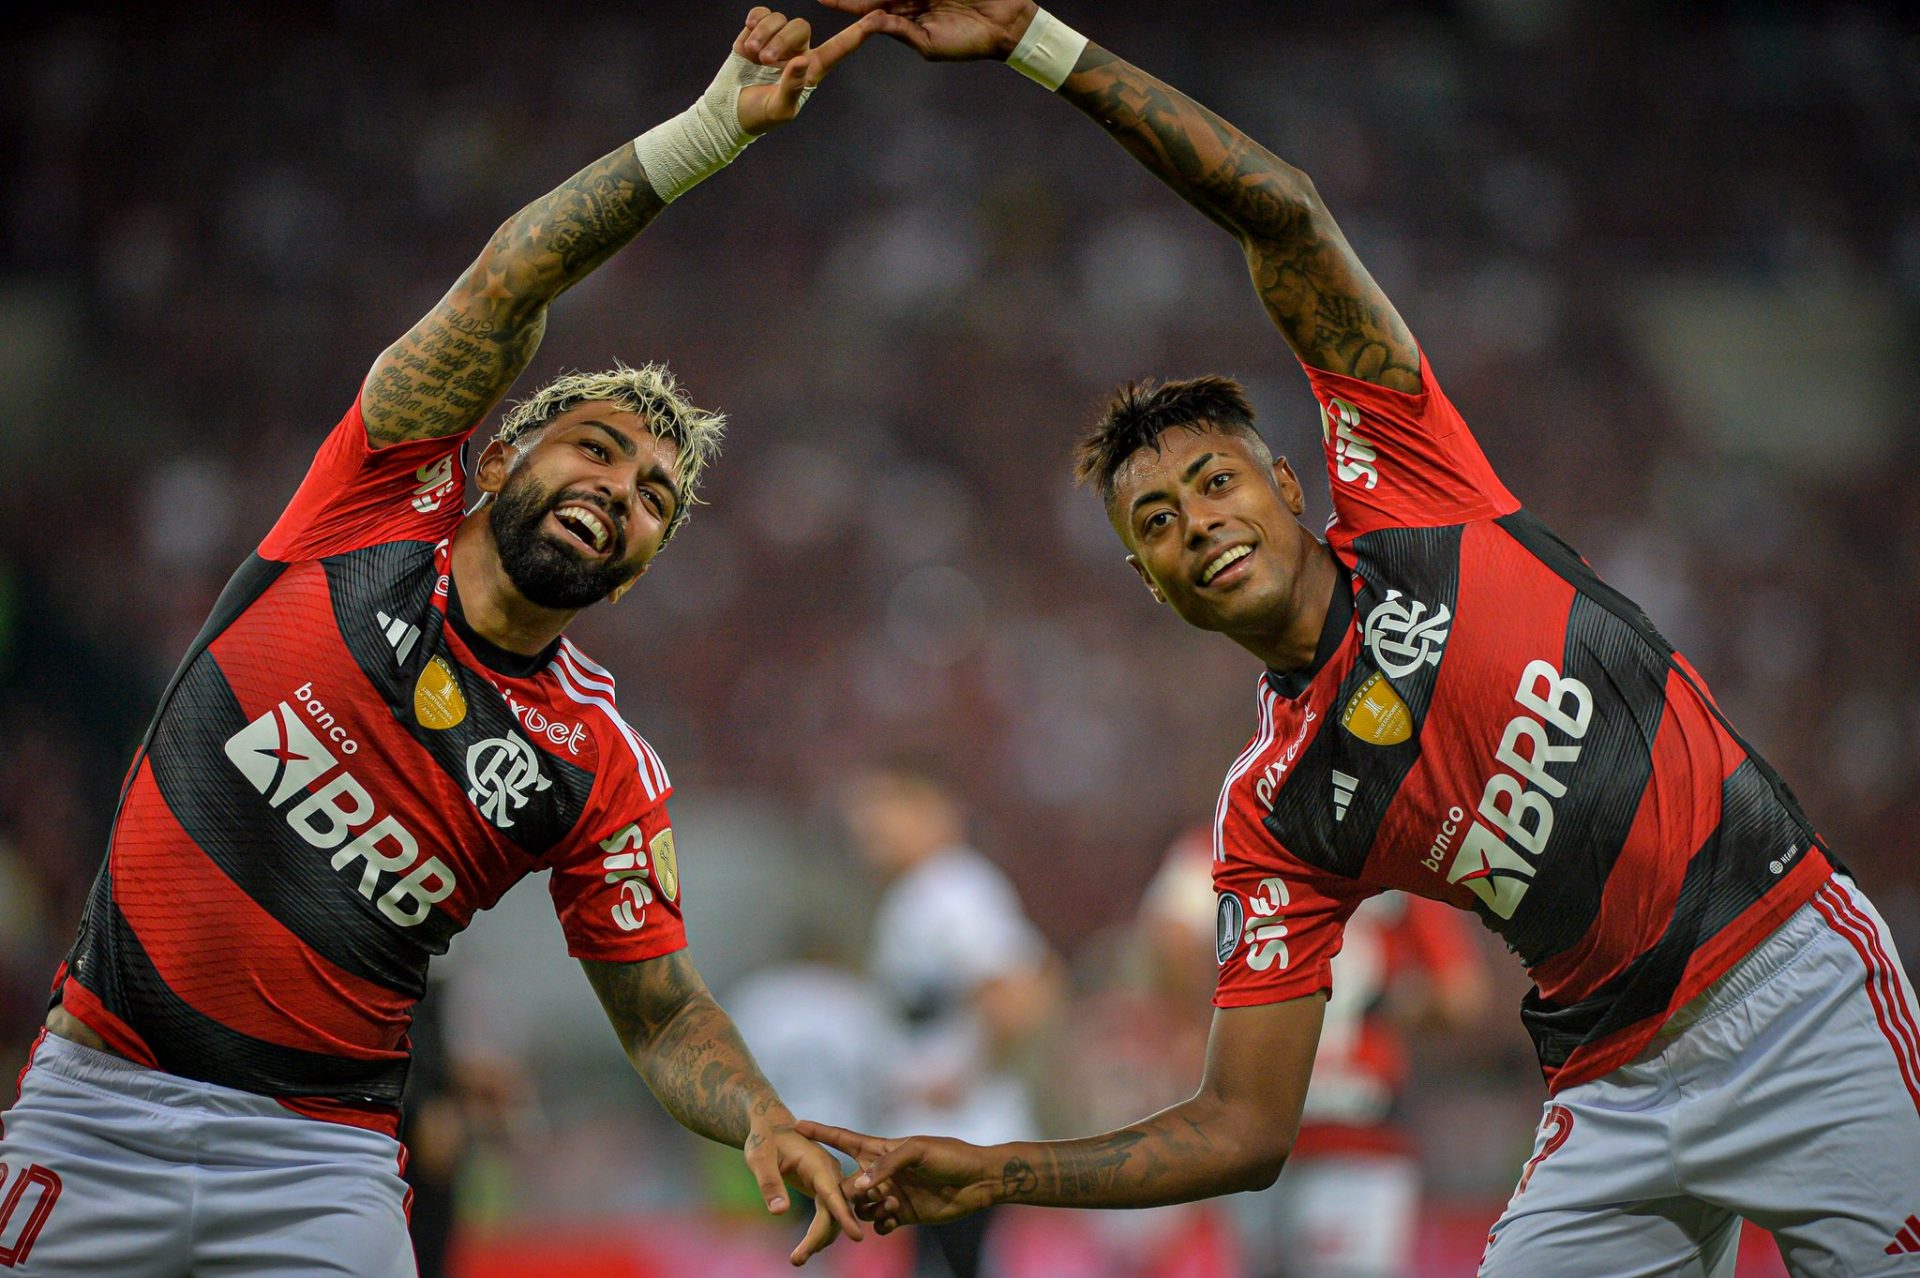 Flamengo x Olimpia: comente o jogo aqui - Coluna do Fla